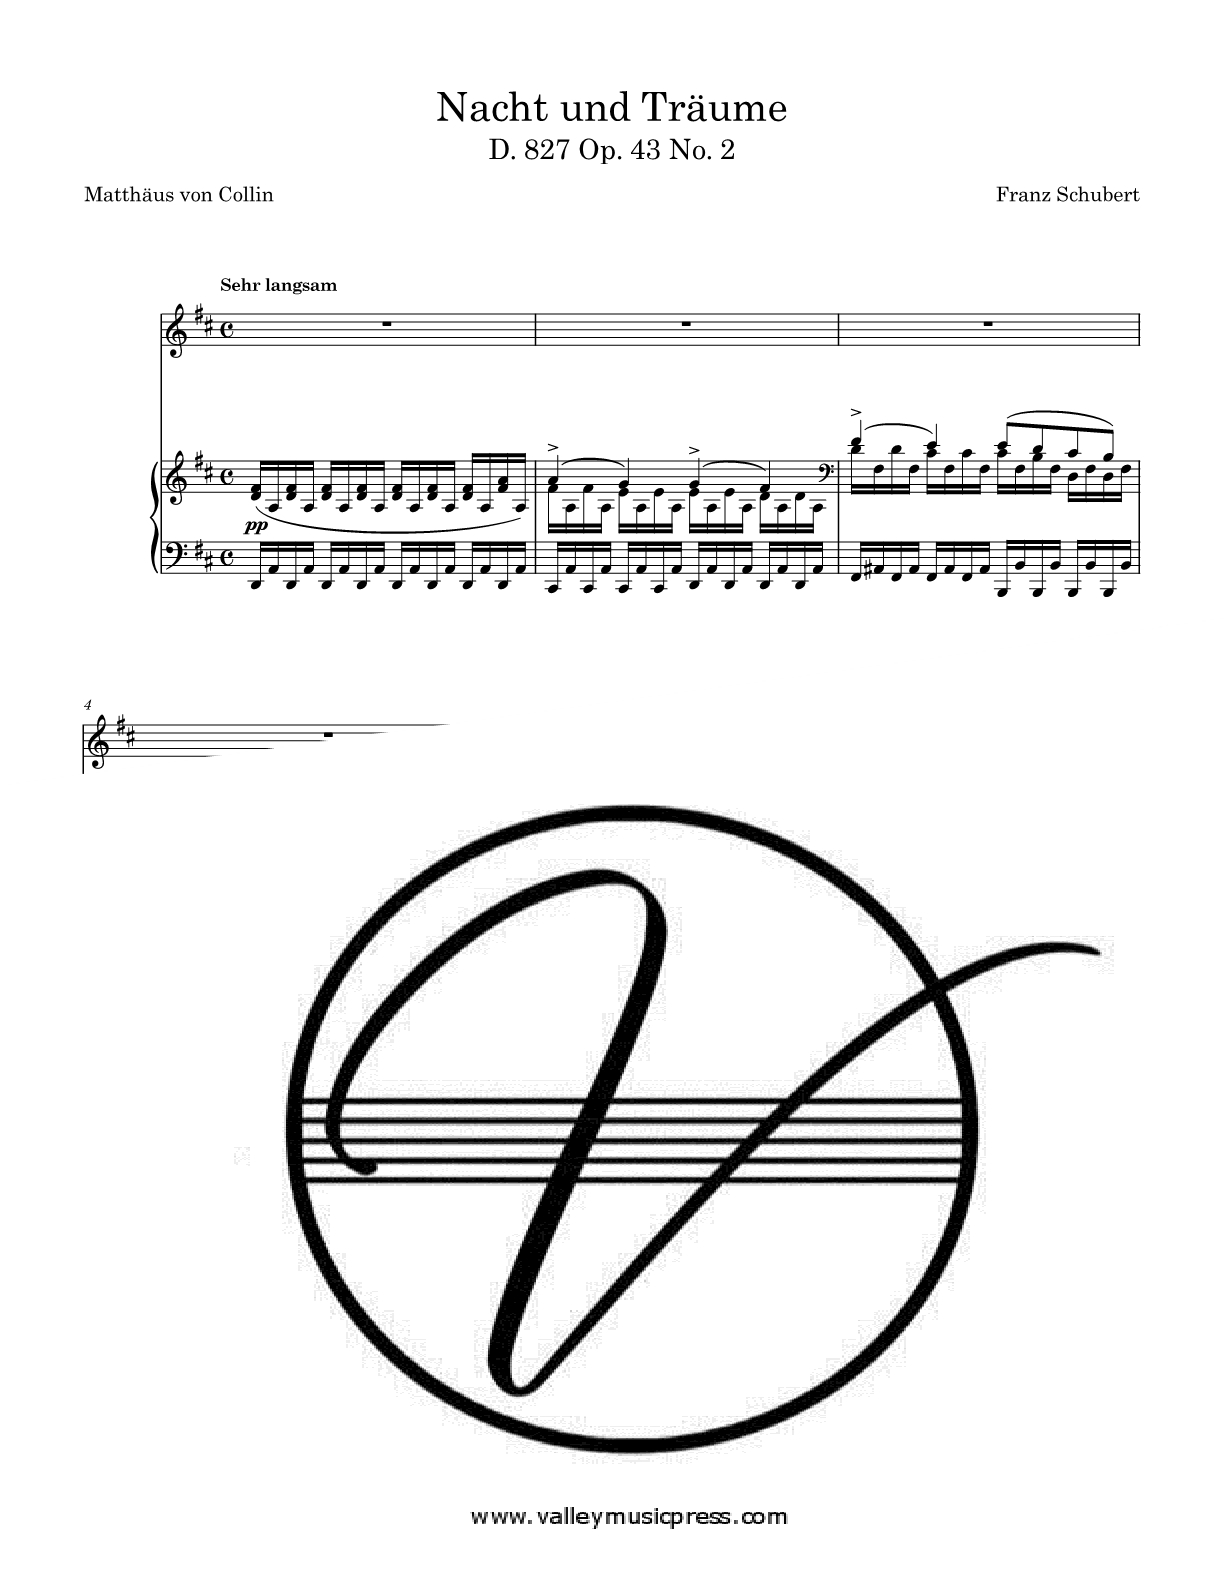 Schubert - Nacht und Traume D. 827 Op. 43 No. 2 (Voice)